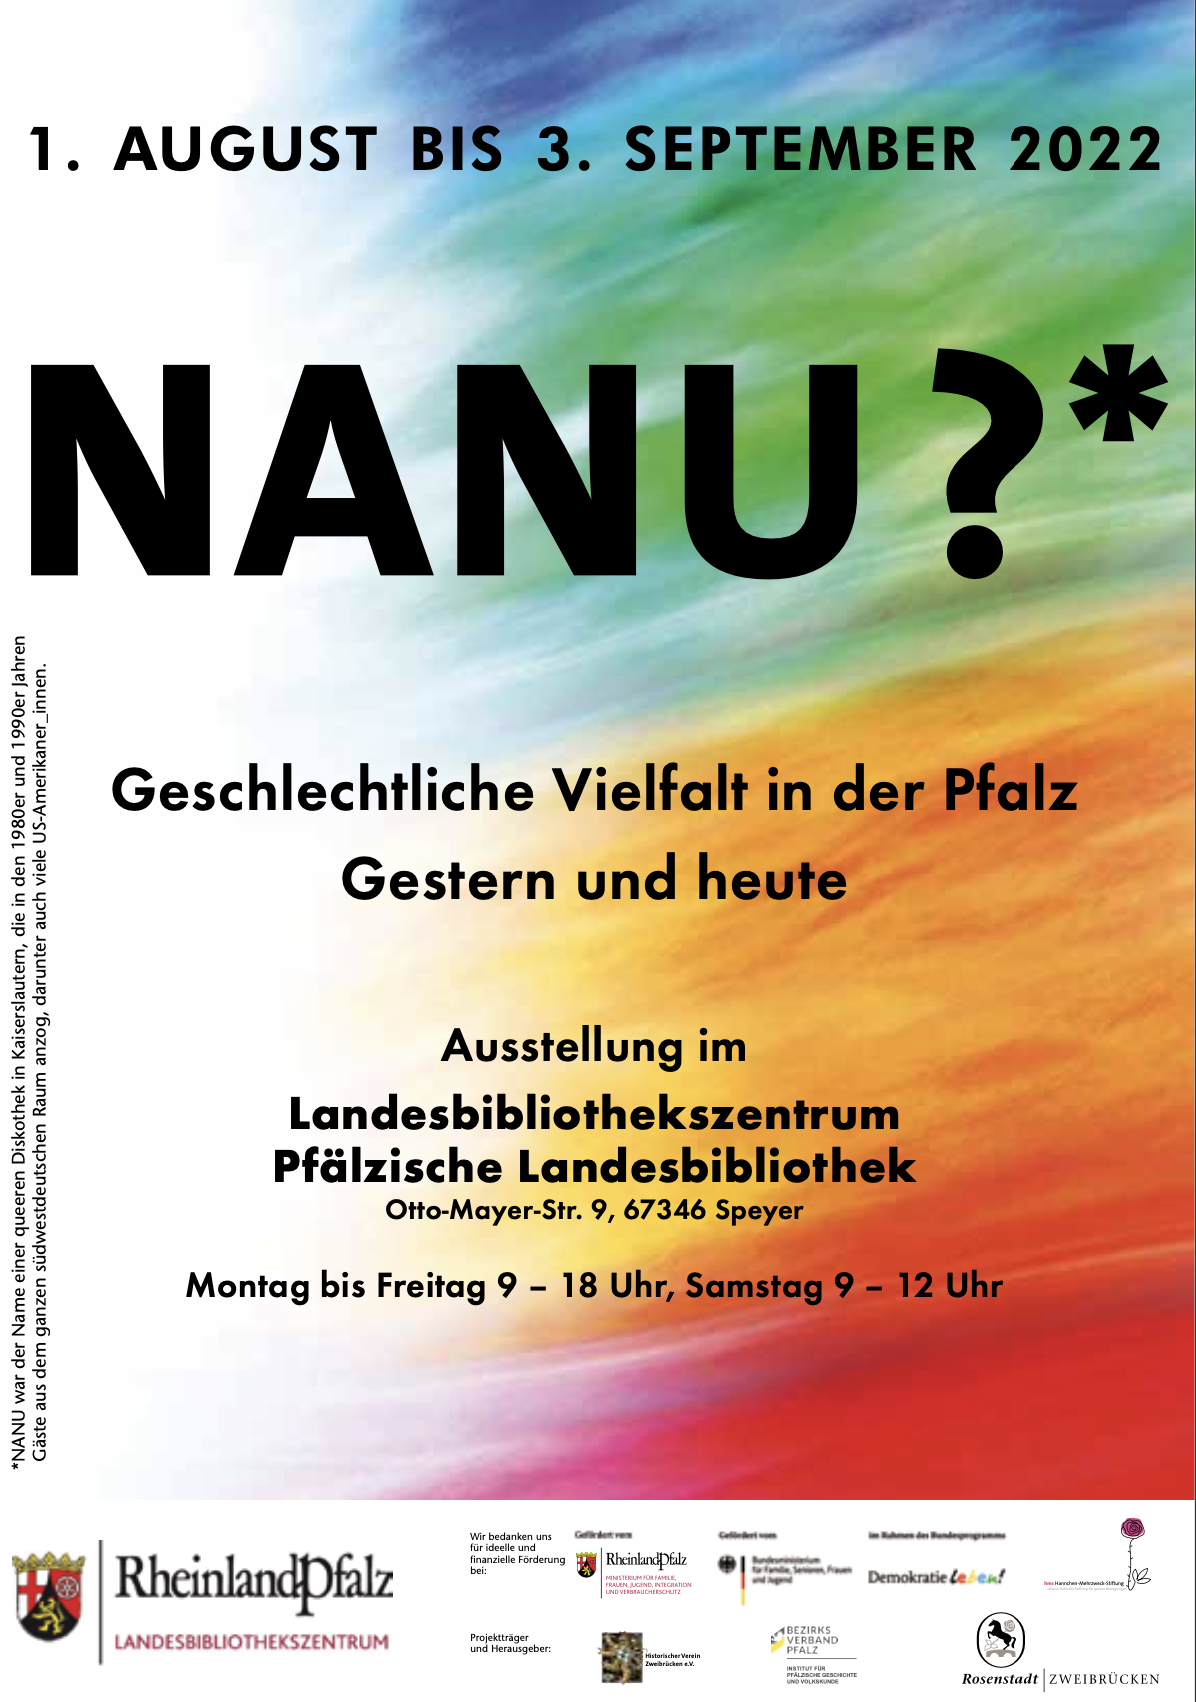 Ausstellung im Landesbibliothekszentrum Pfälzische Landesbibliothek: „Nanu?*“ Geschlechtliche Vielfalt in der Pfalz Gestern und heute